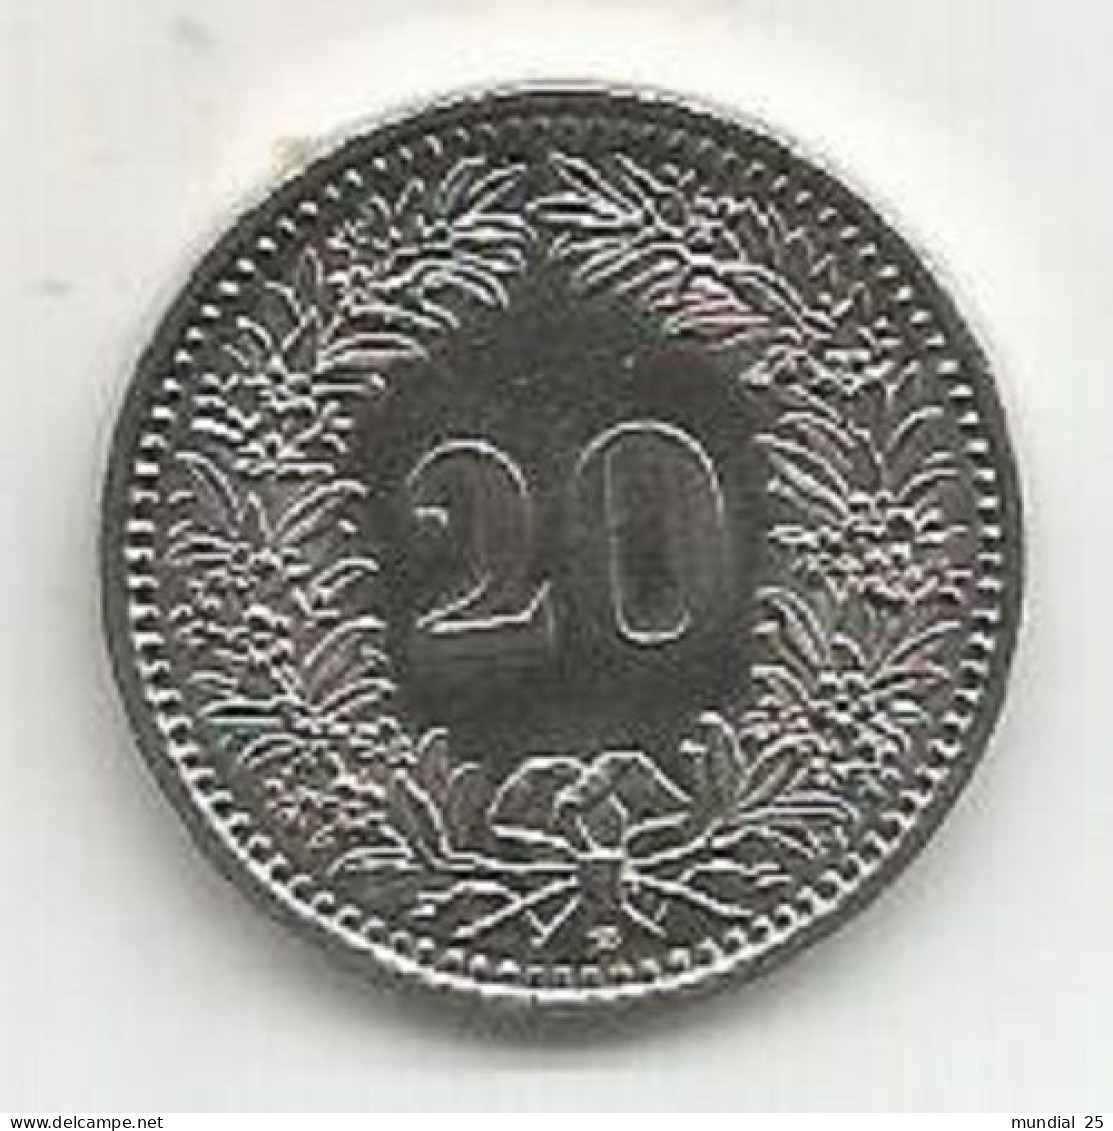 SWITZERLAND 20 RAPPEN 2003B - 20 Centimes / Rappen